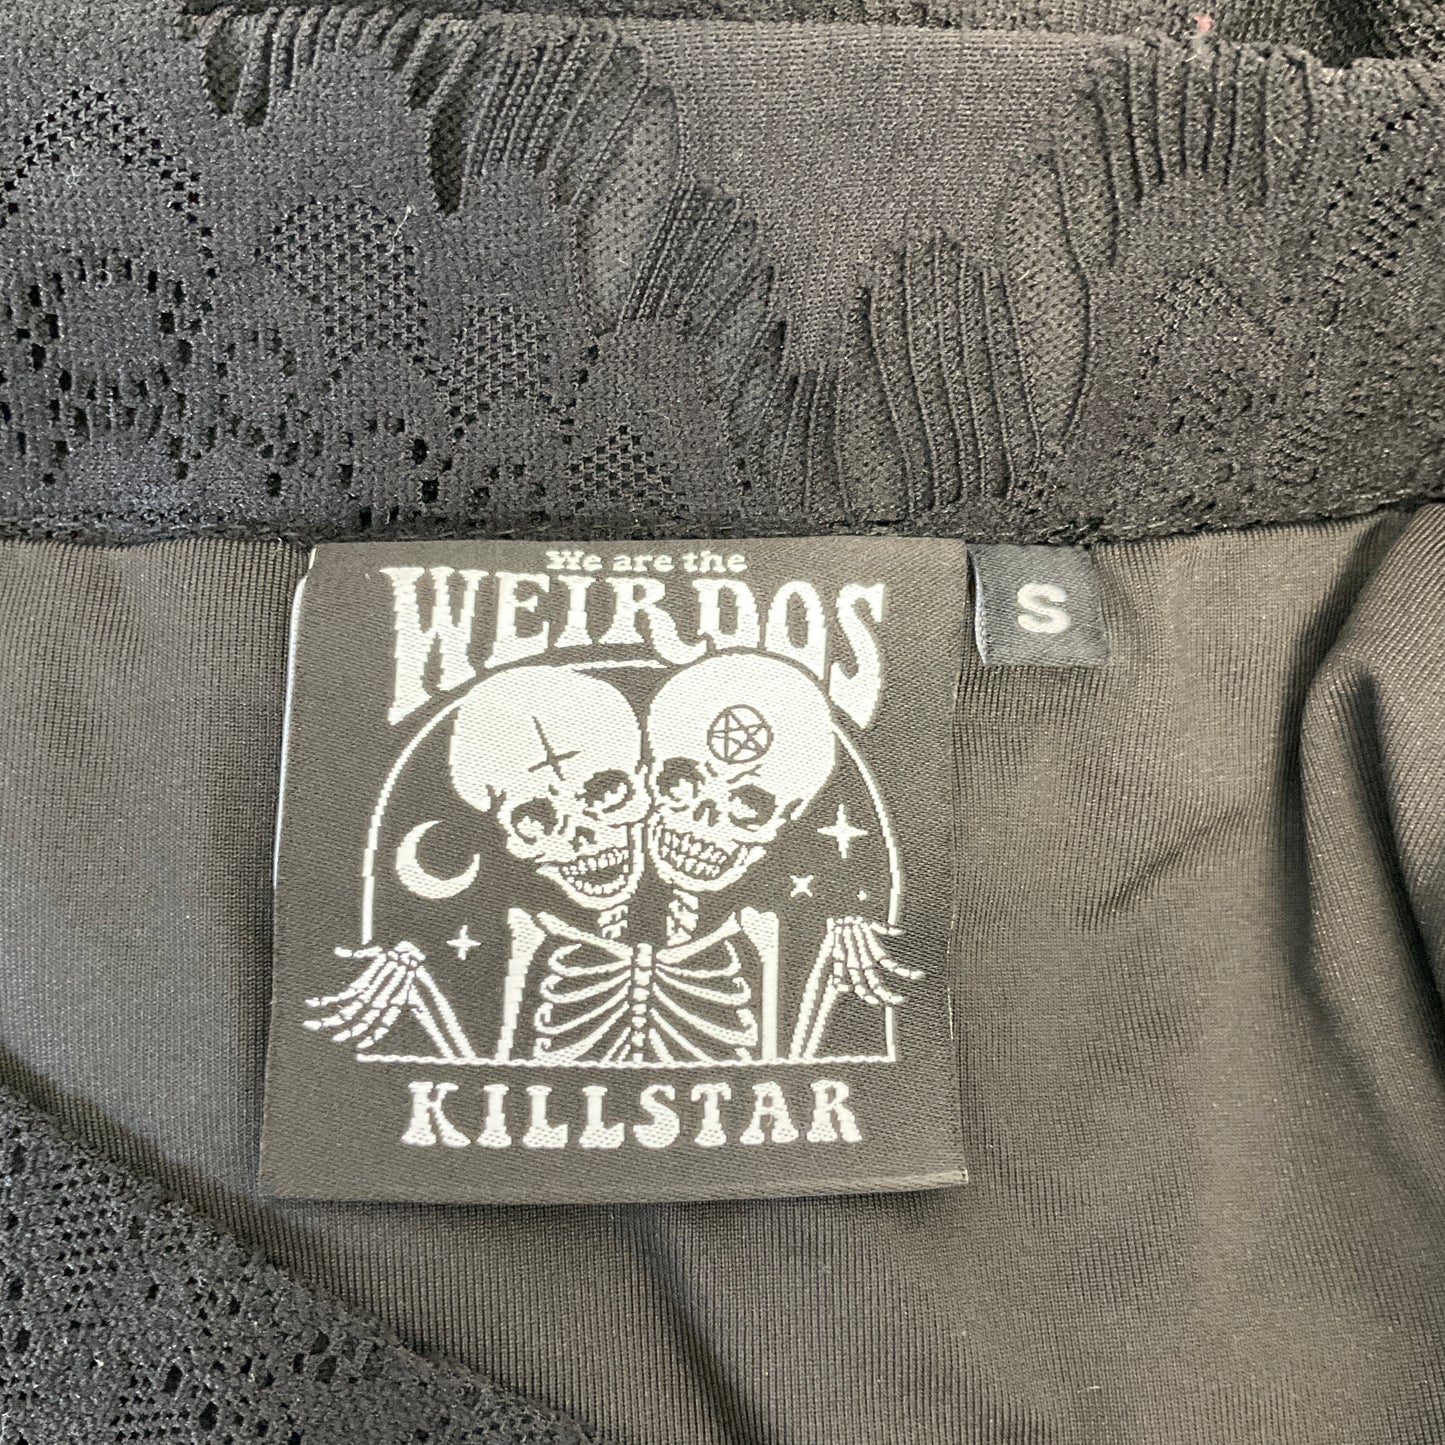 Killstar - We are the Weirdos Skirt